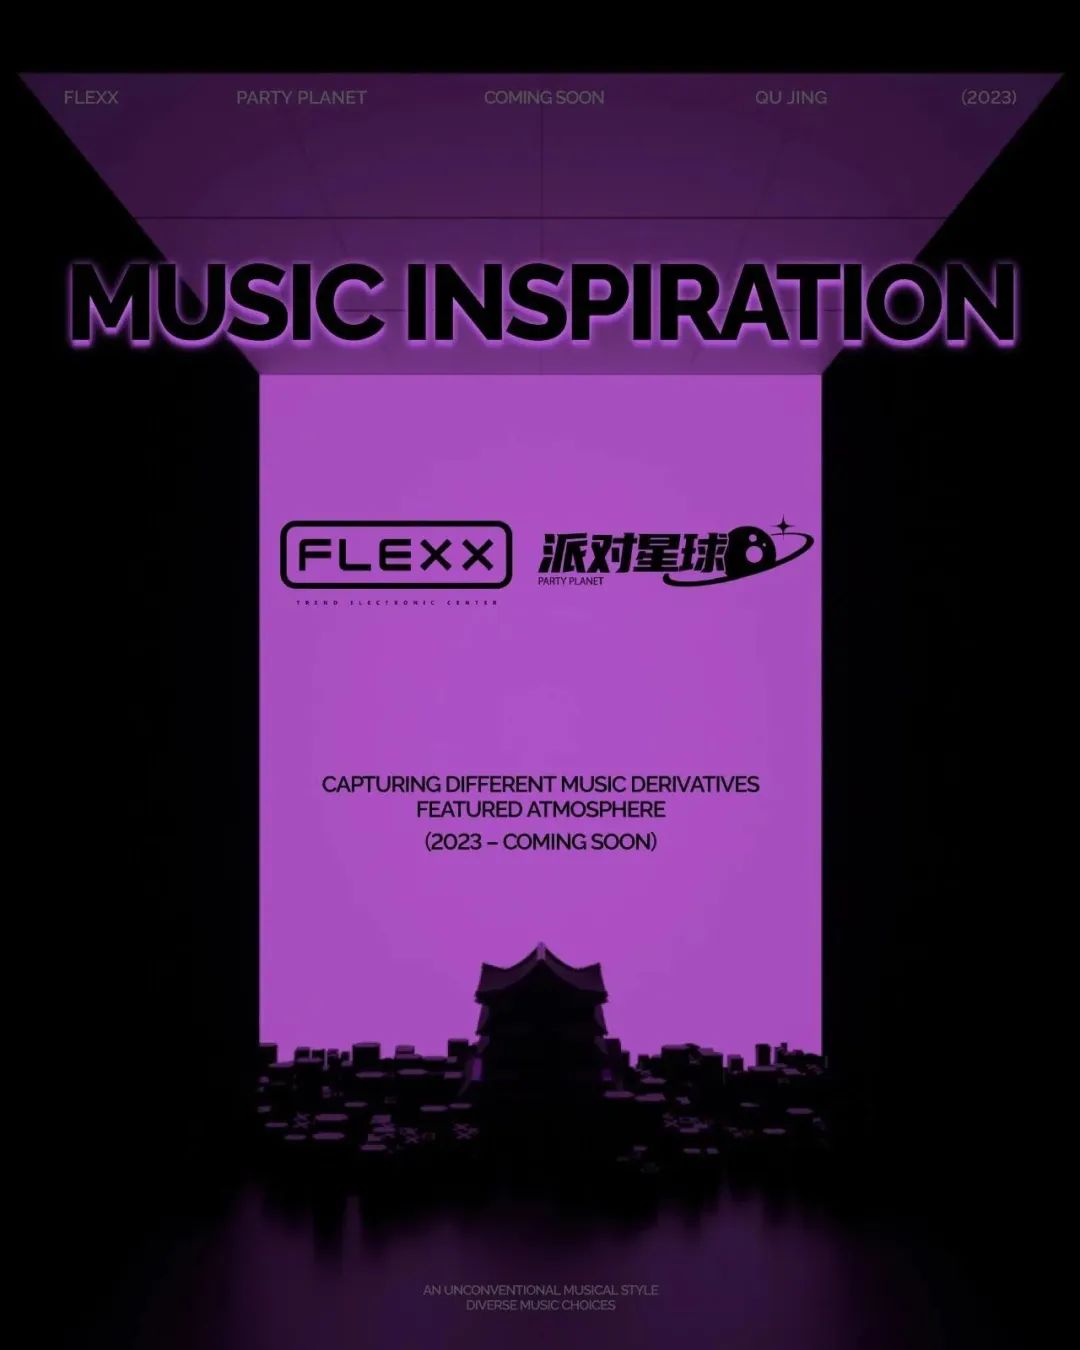 FLEXX QUJING丨来自FLEXX派对星球的音乐感召-昆明菲利克斯酒吧/FLEXX CLUB